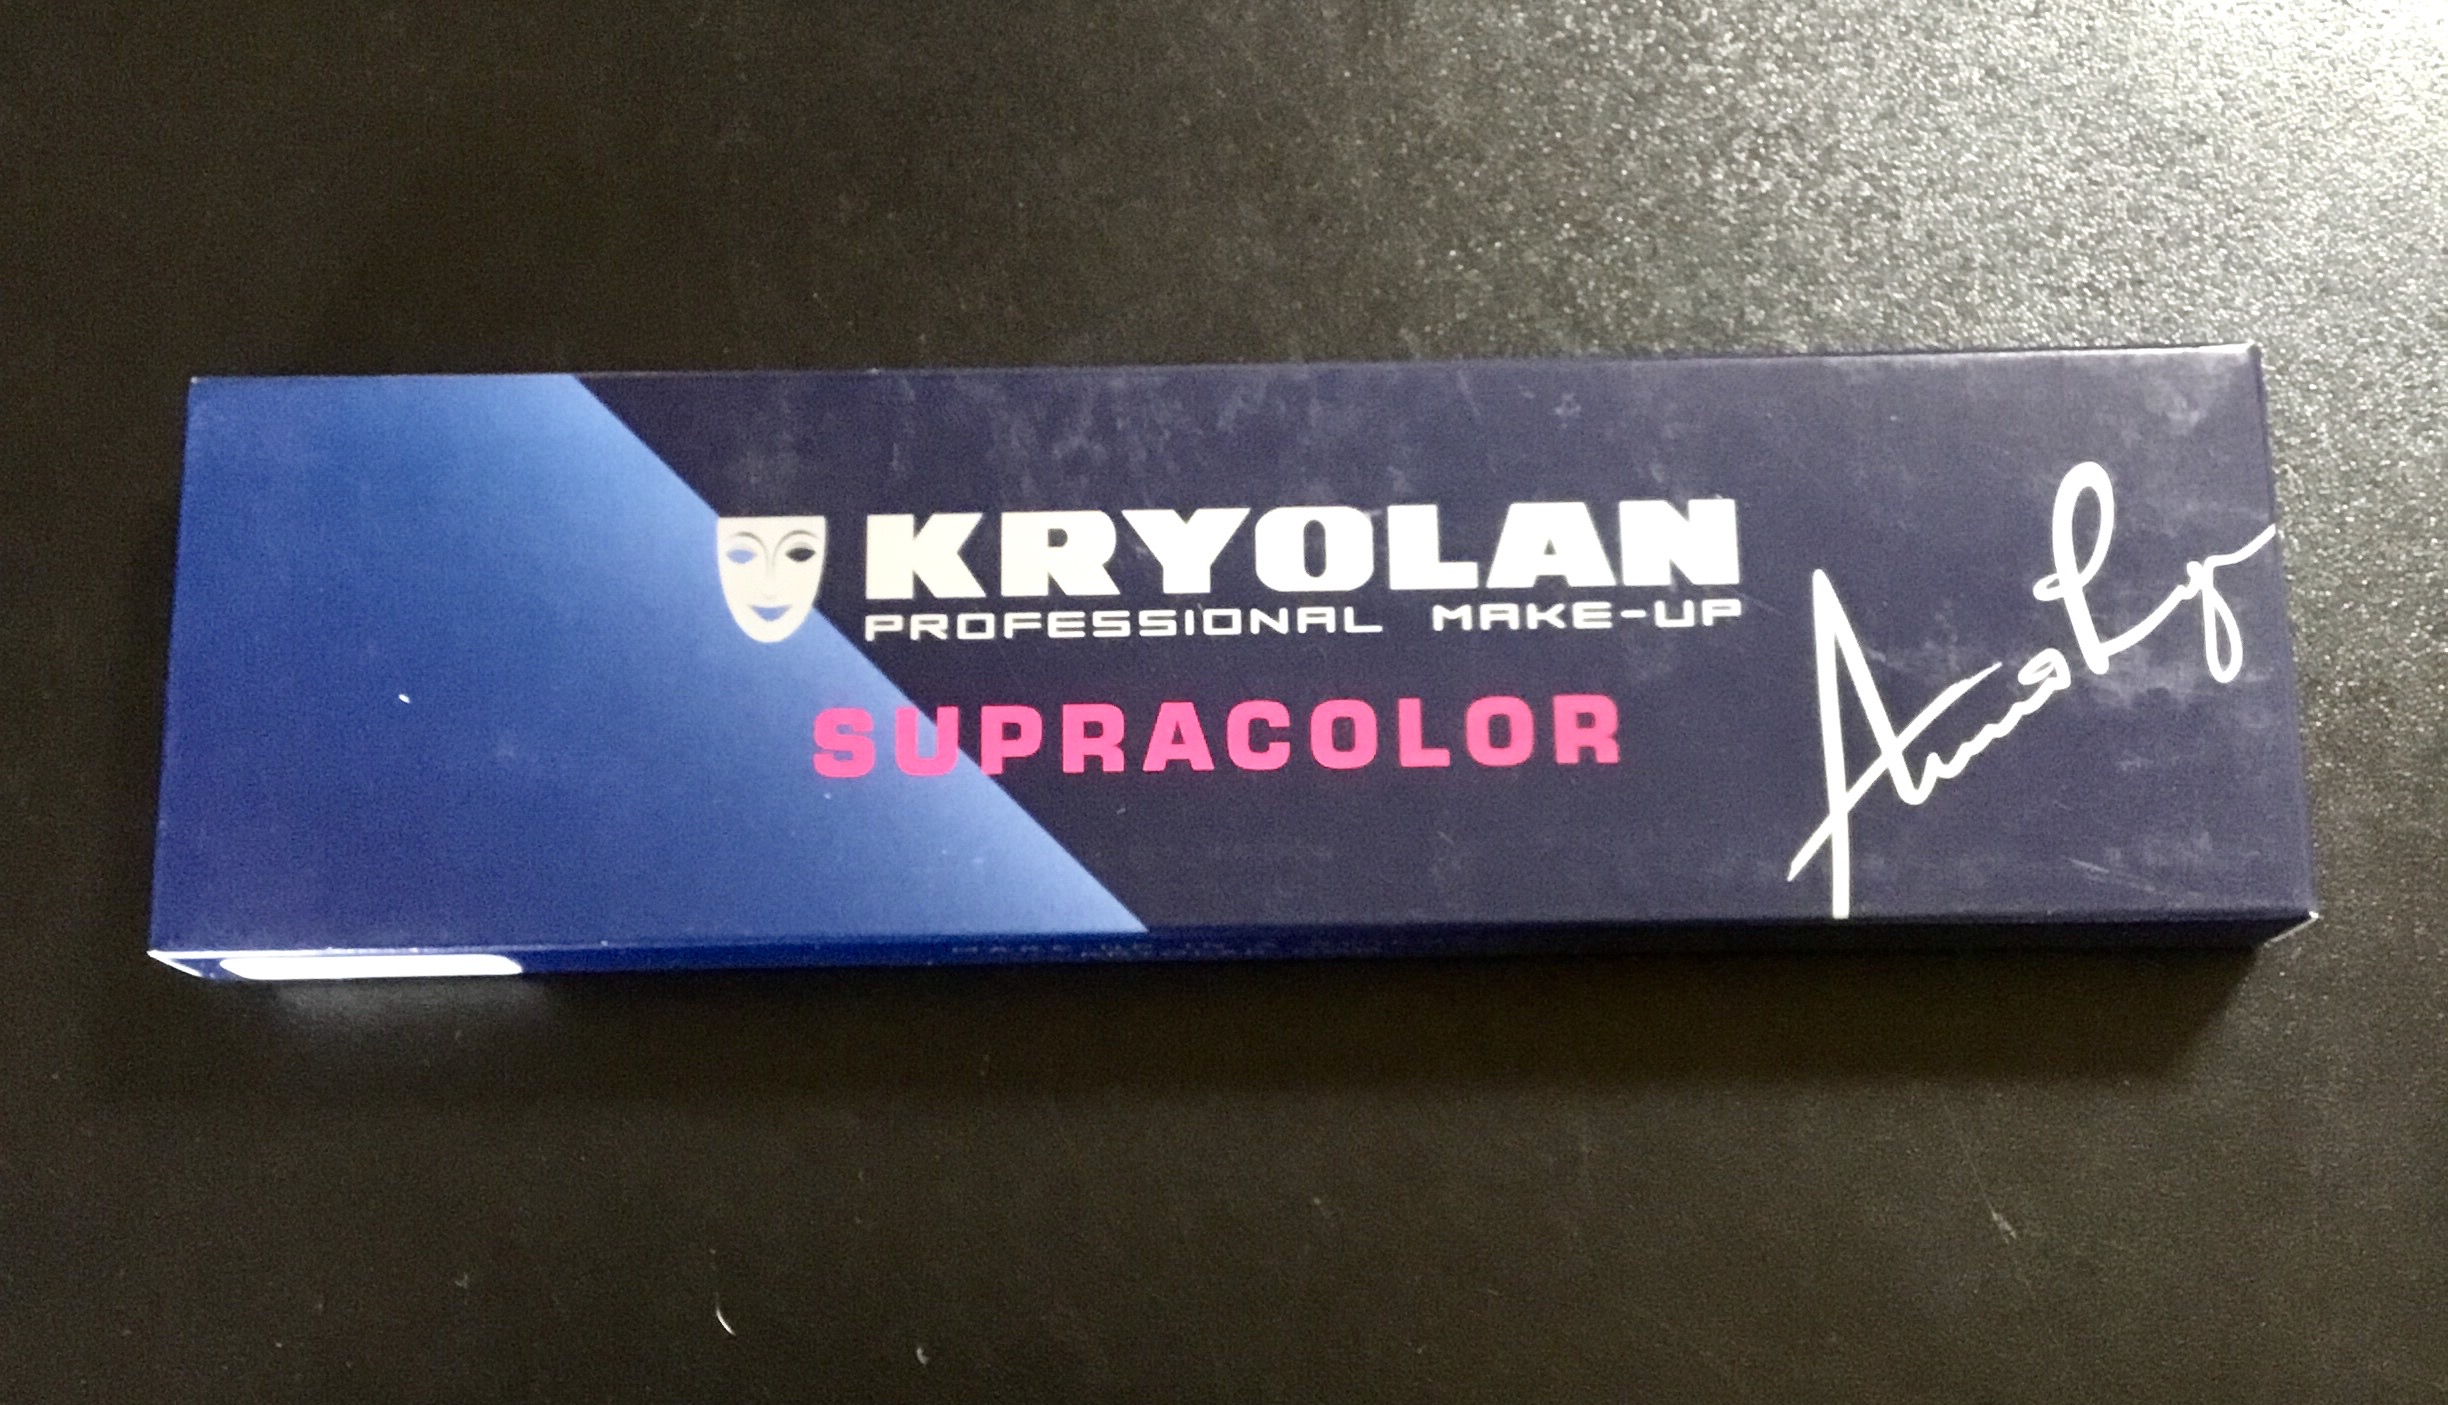 Paleta supracolor 6 colores Kryolan